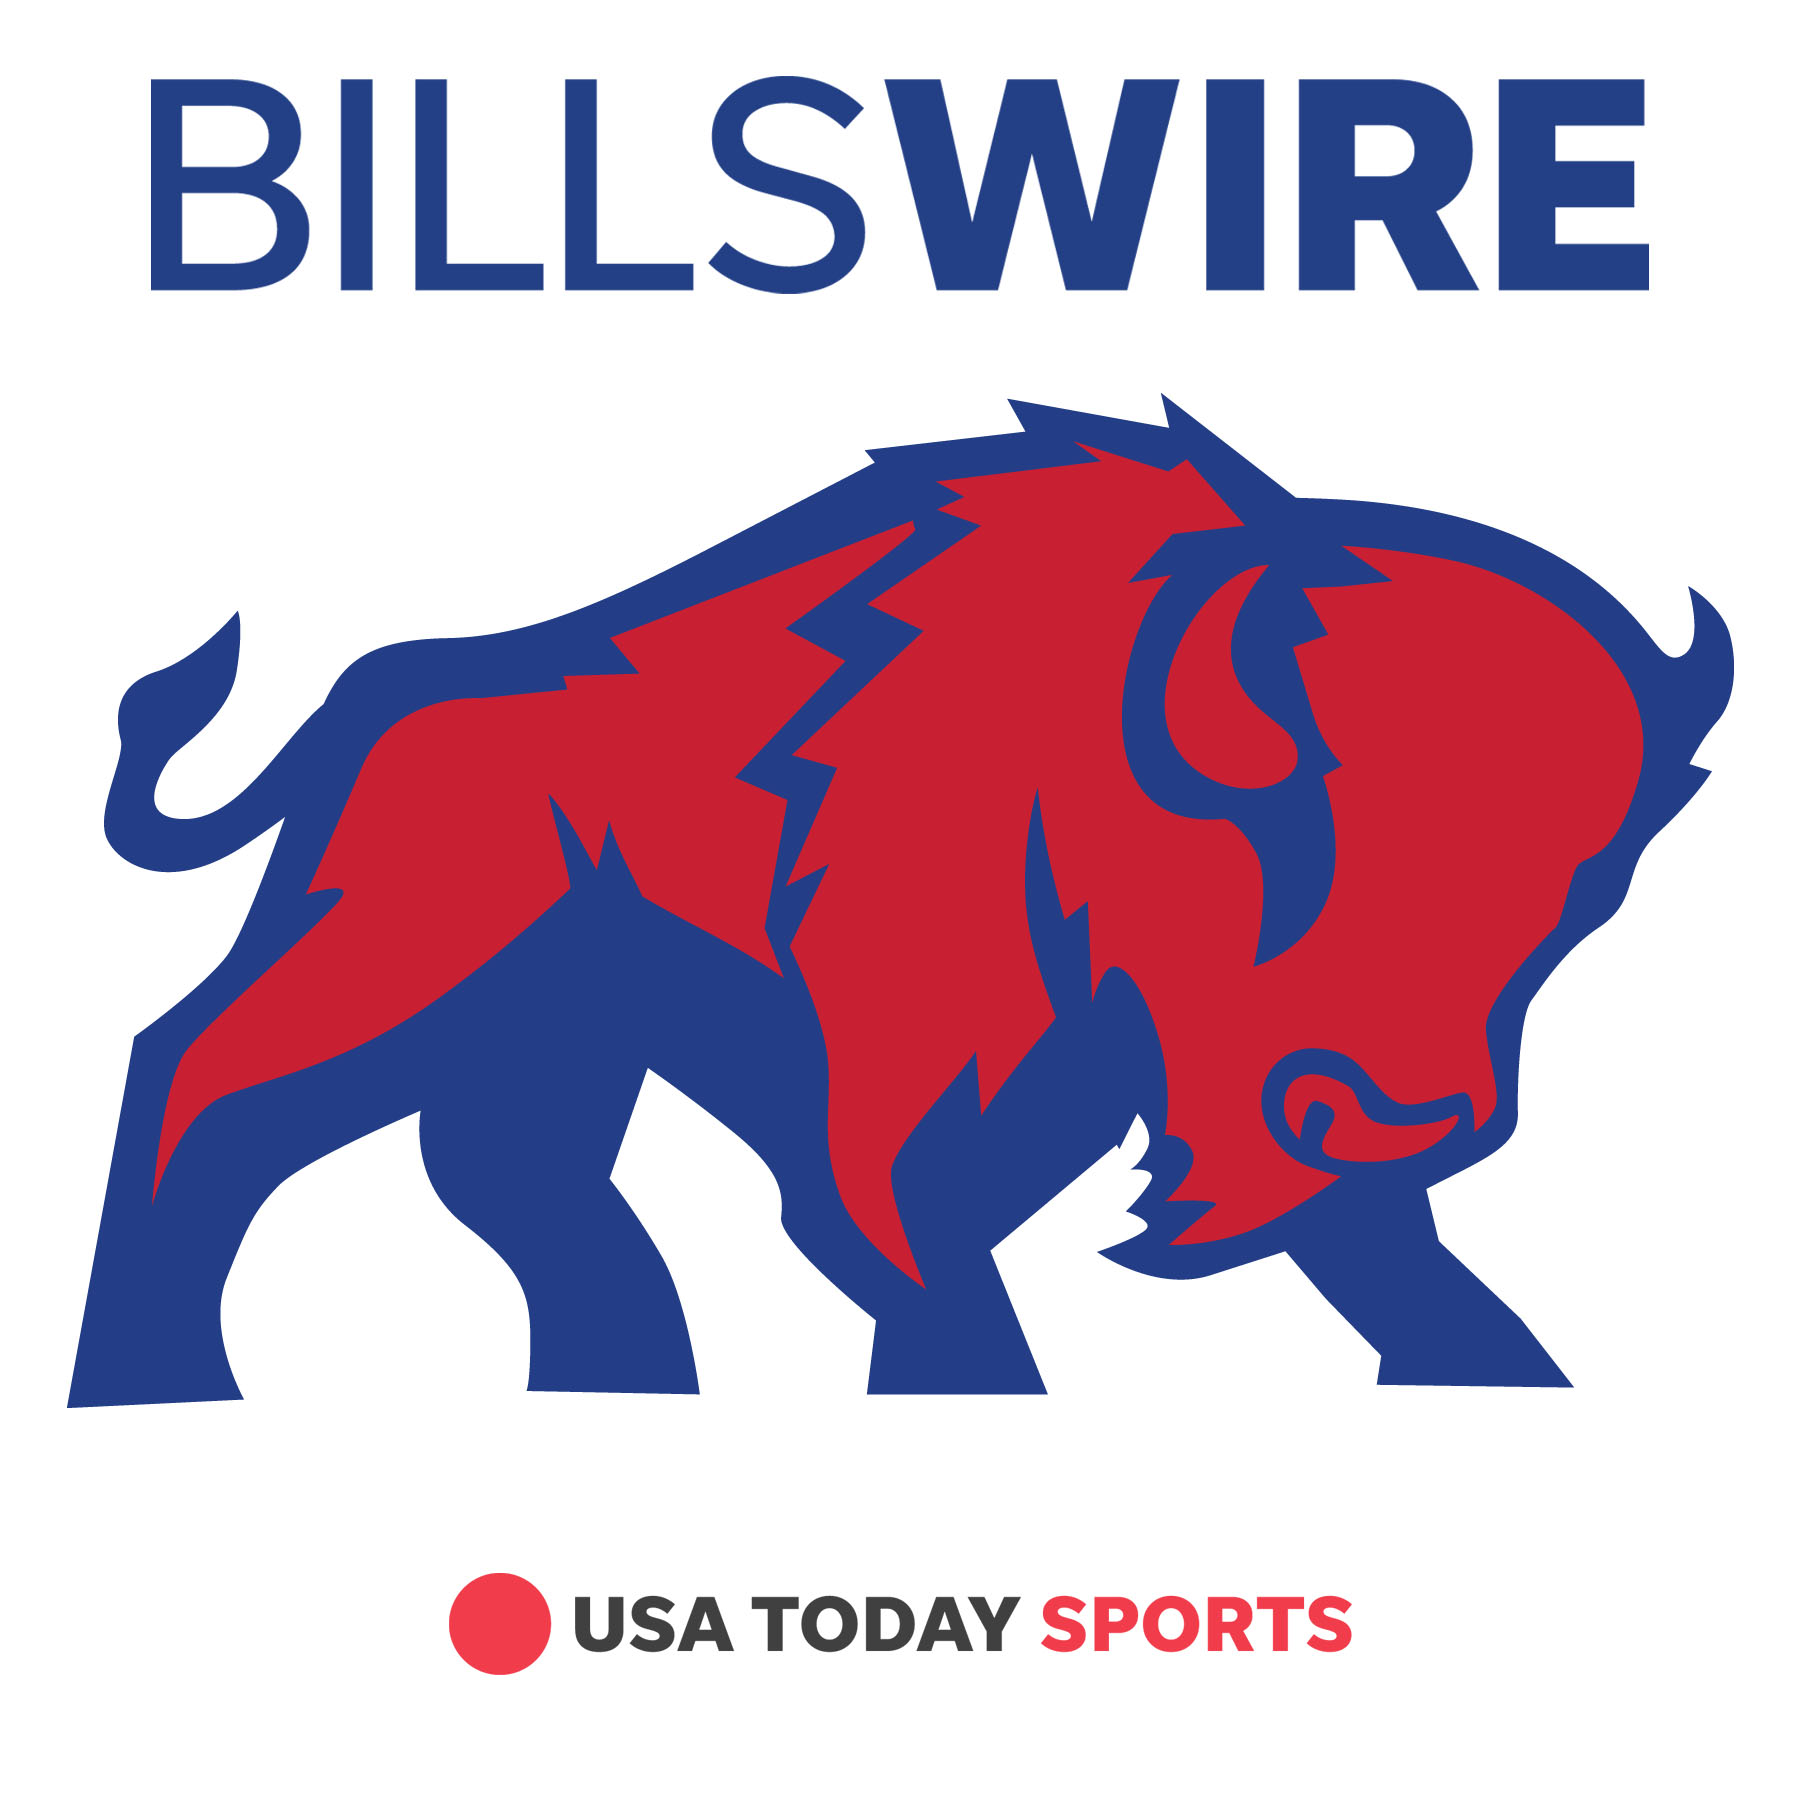 Leslie Fraser’s defense has Bills on Super Bowl path